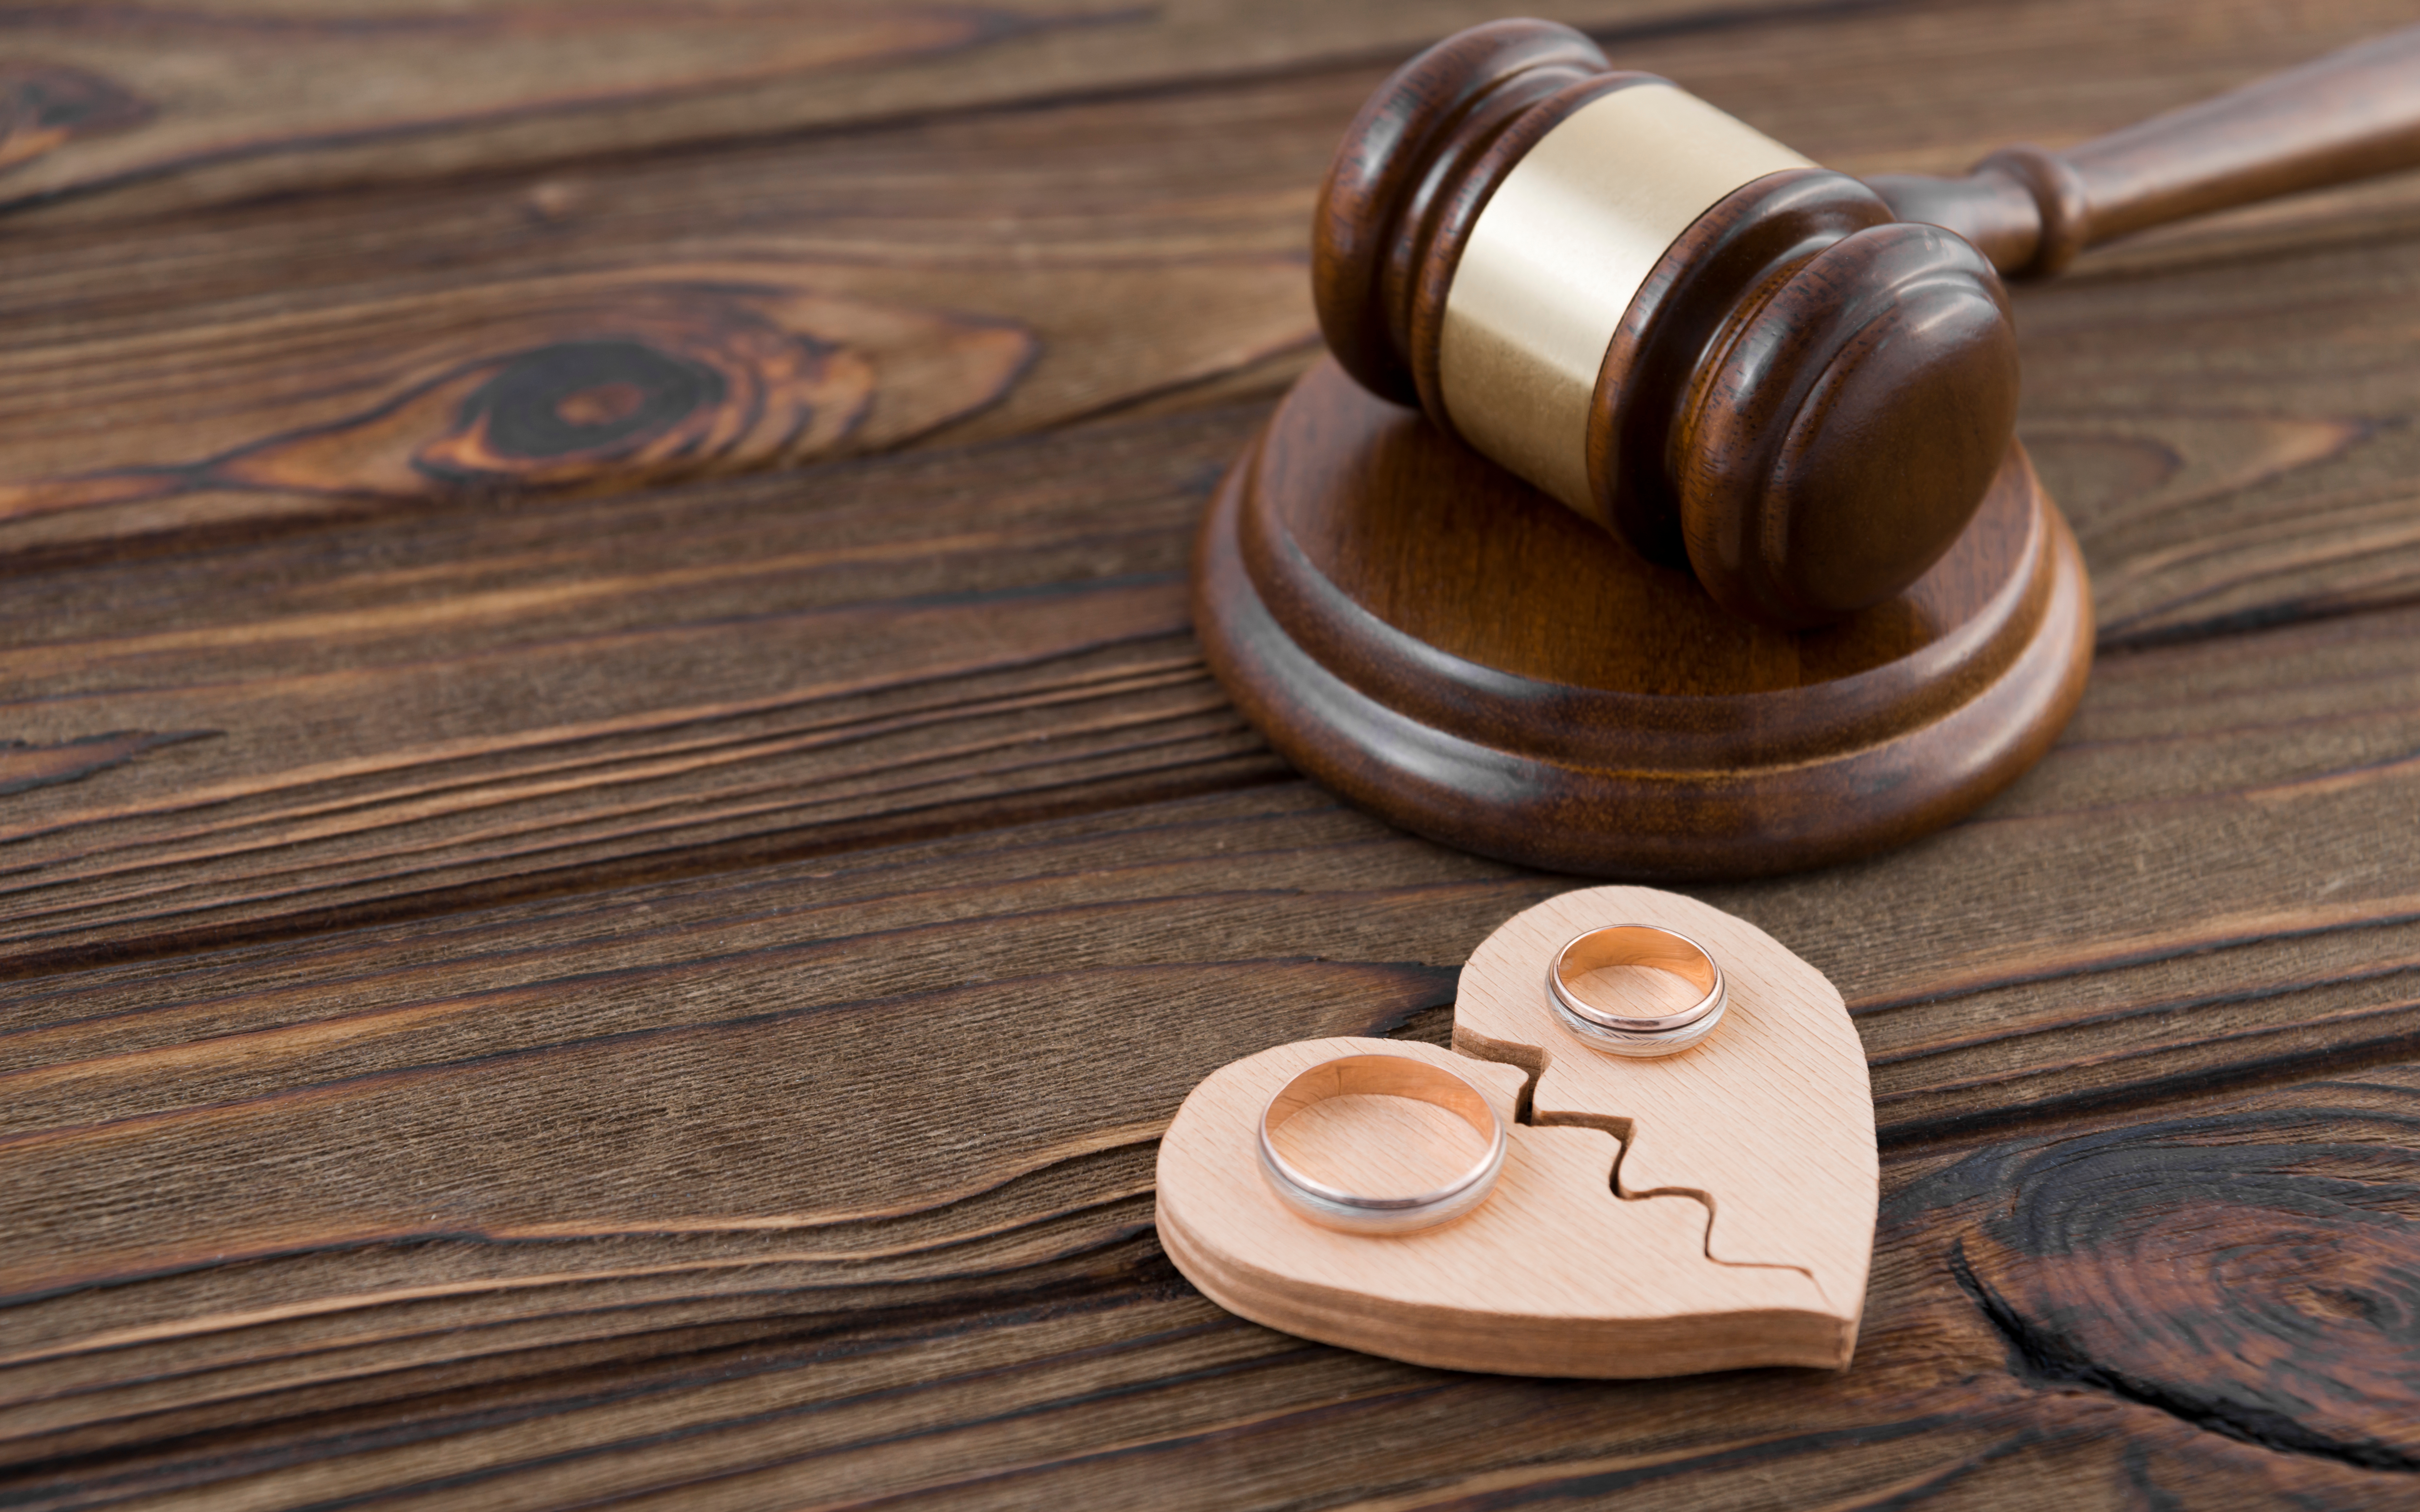 Deux alliances posées sur une figure de cœur brisé en bois avec un marteau de juge sur un fond en bois | Source : Shutterstock